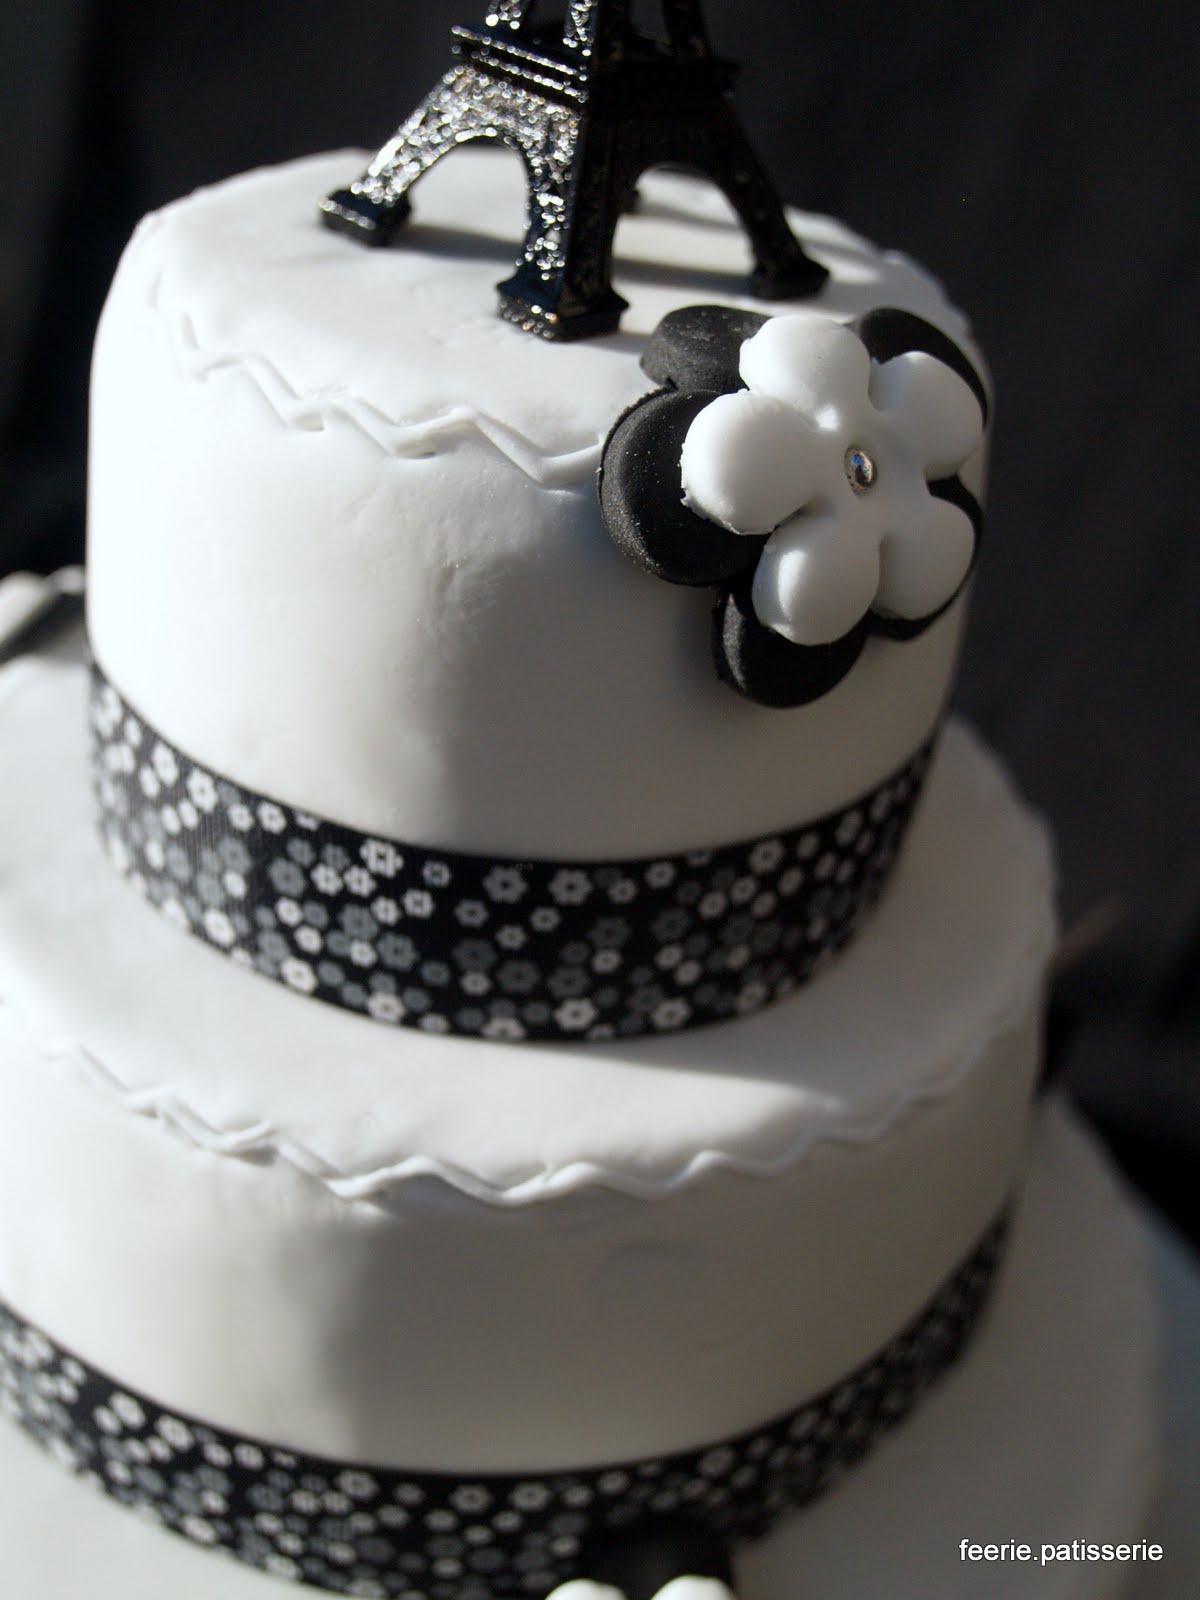 suivre : une autre pièce montée en noir et blanc et un gâteau de ...